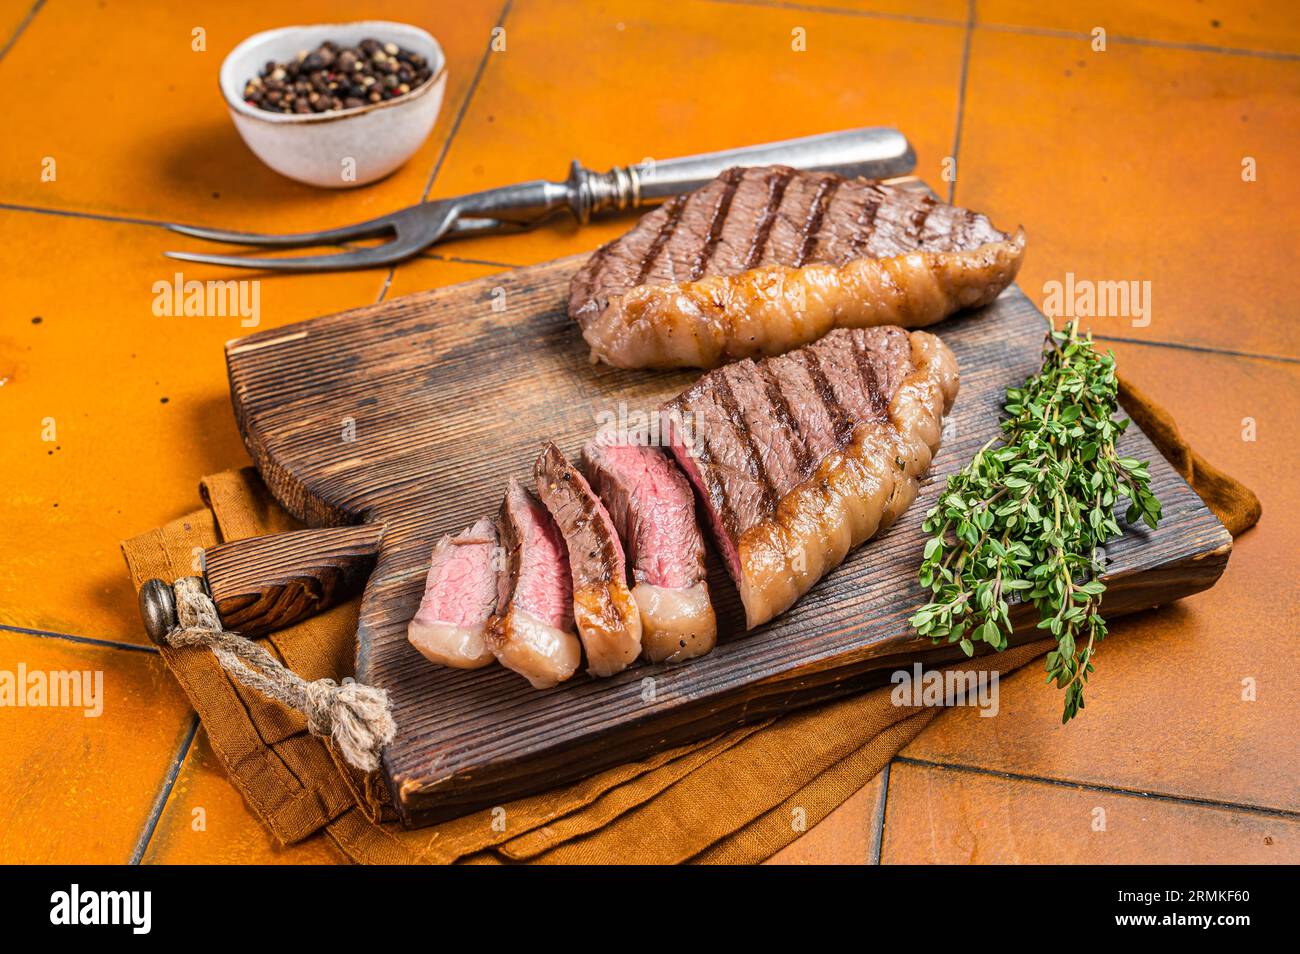 Steak brésilien Picanha rôti au barbecue, steak de viande de bœuf sur une table de service en bois. Arrière-plan orange. Vue de dessus. Banque D'Images